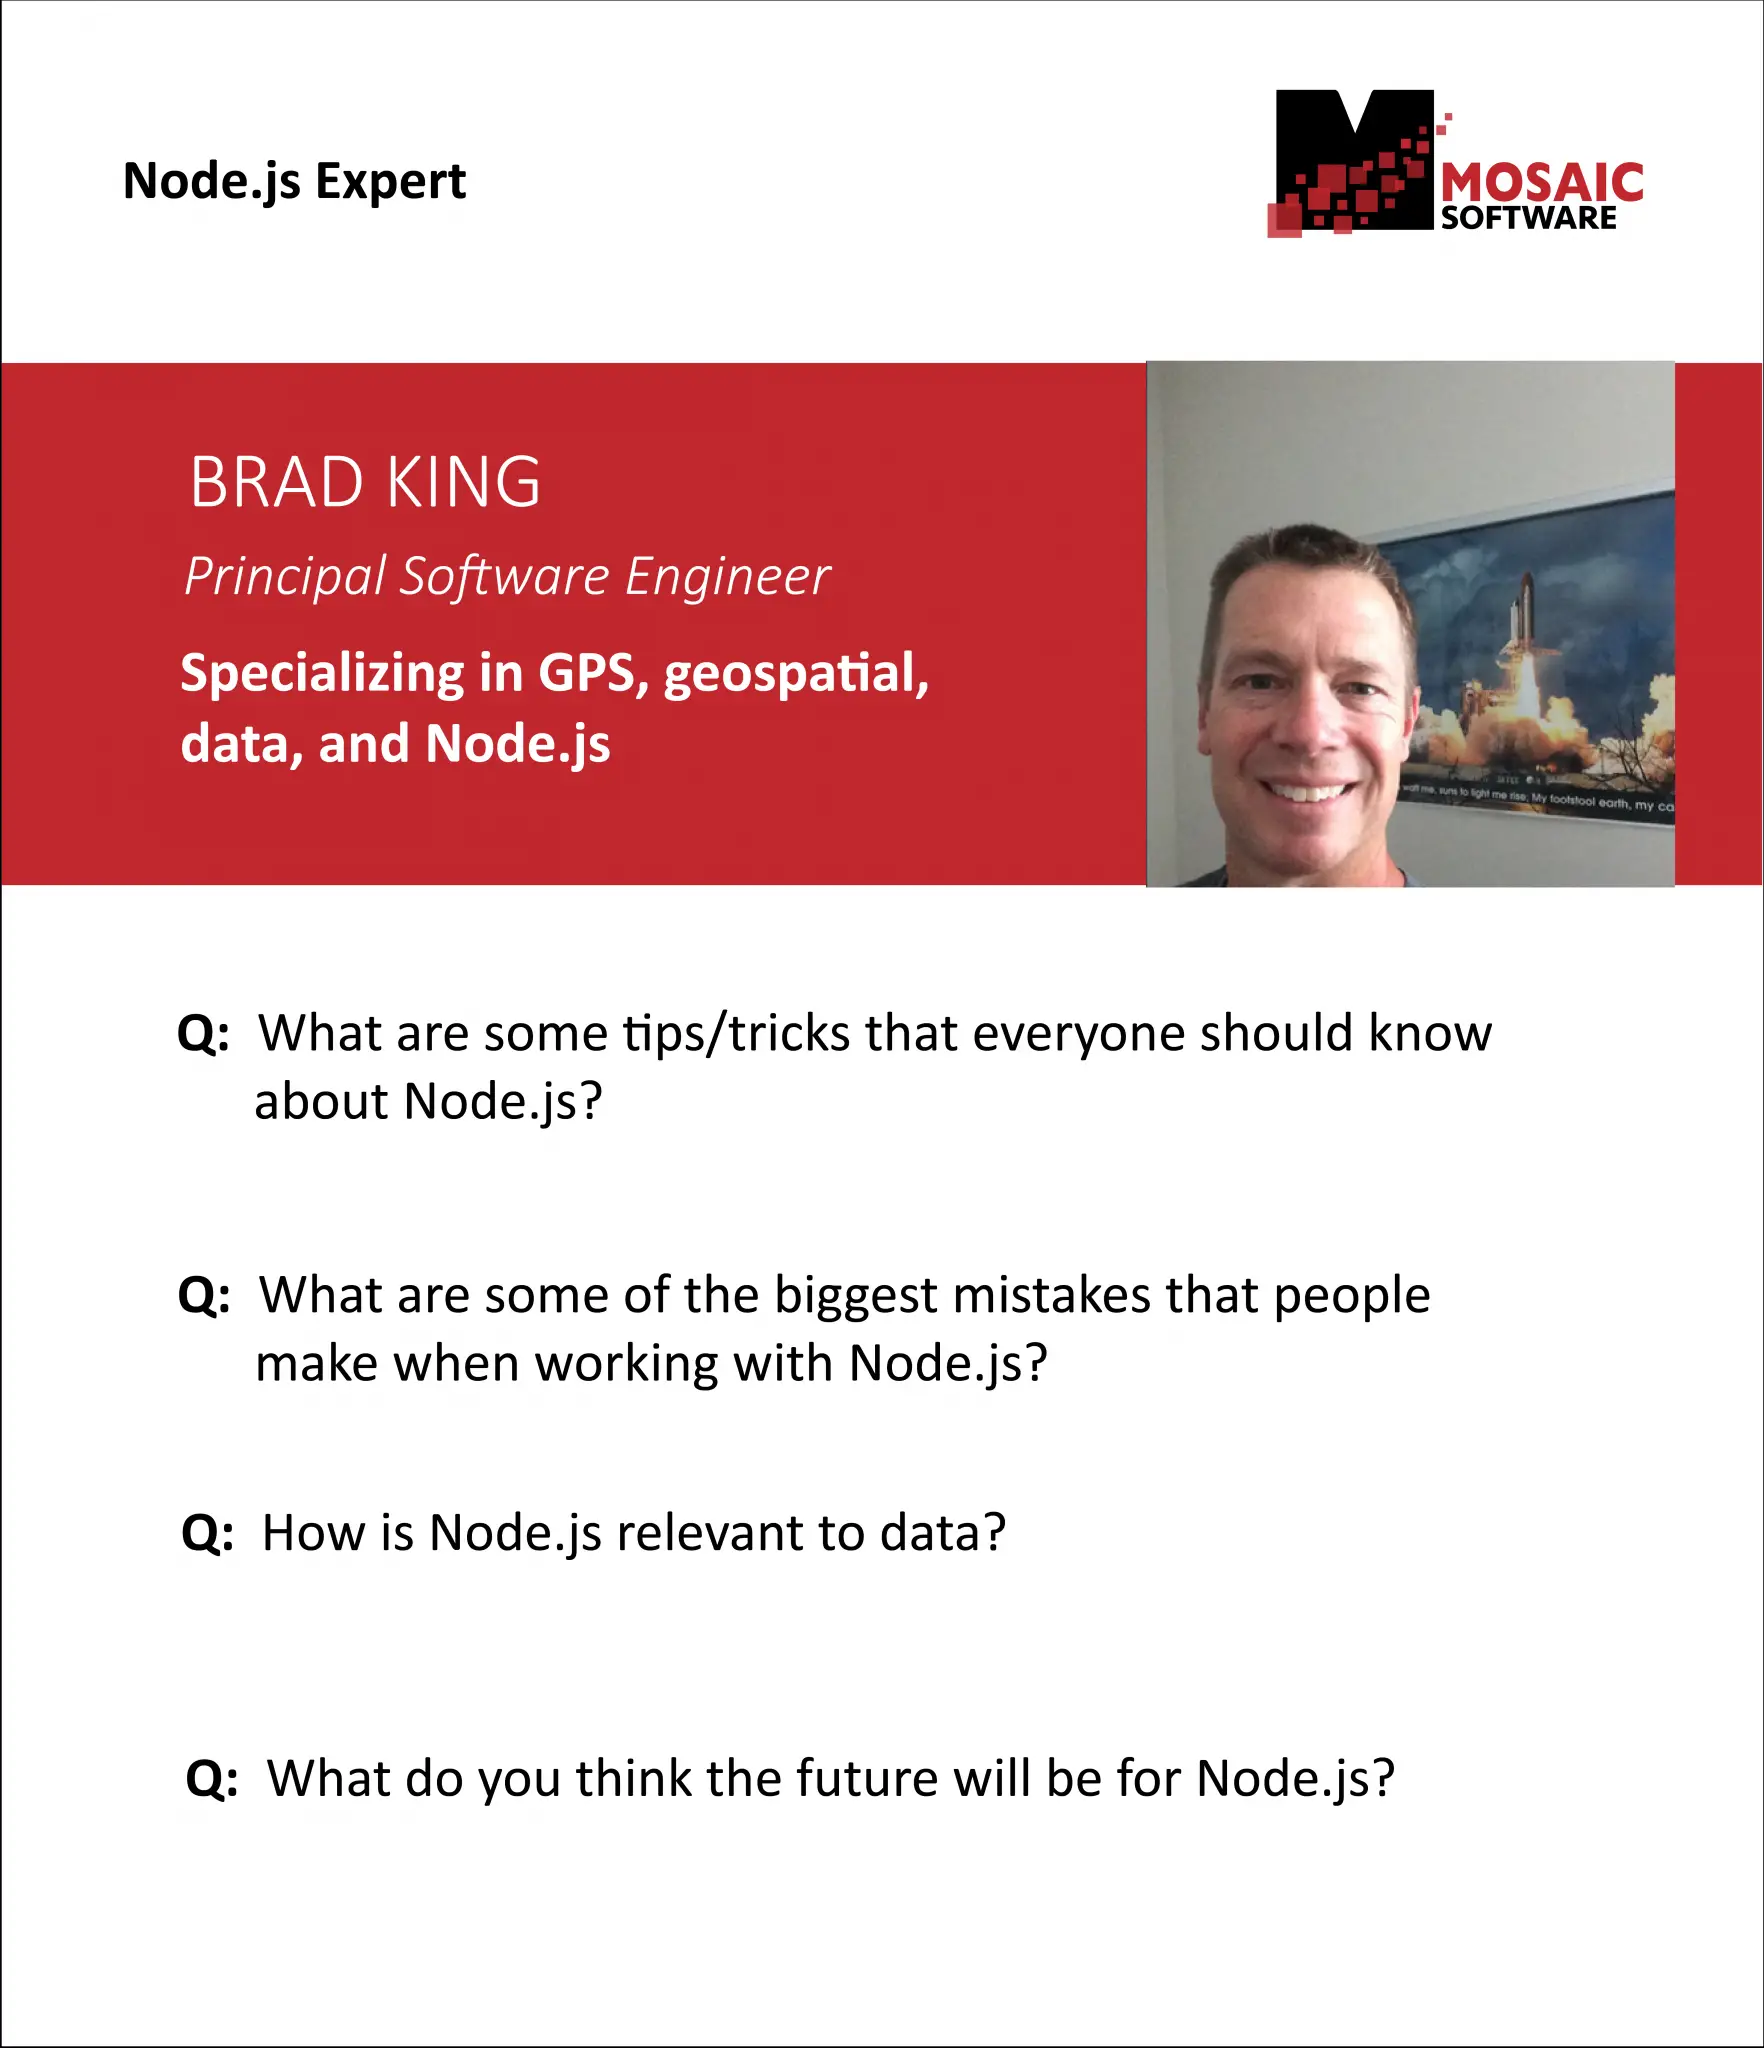 Node.js Expert Q& A: Advice from a Software Engineer